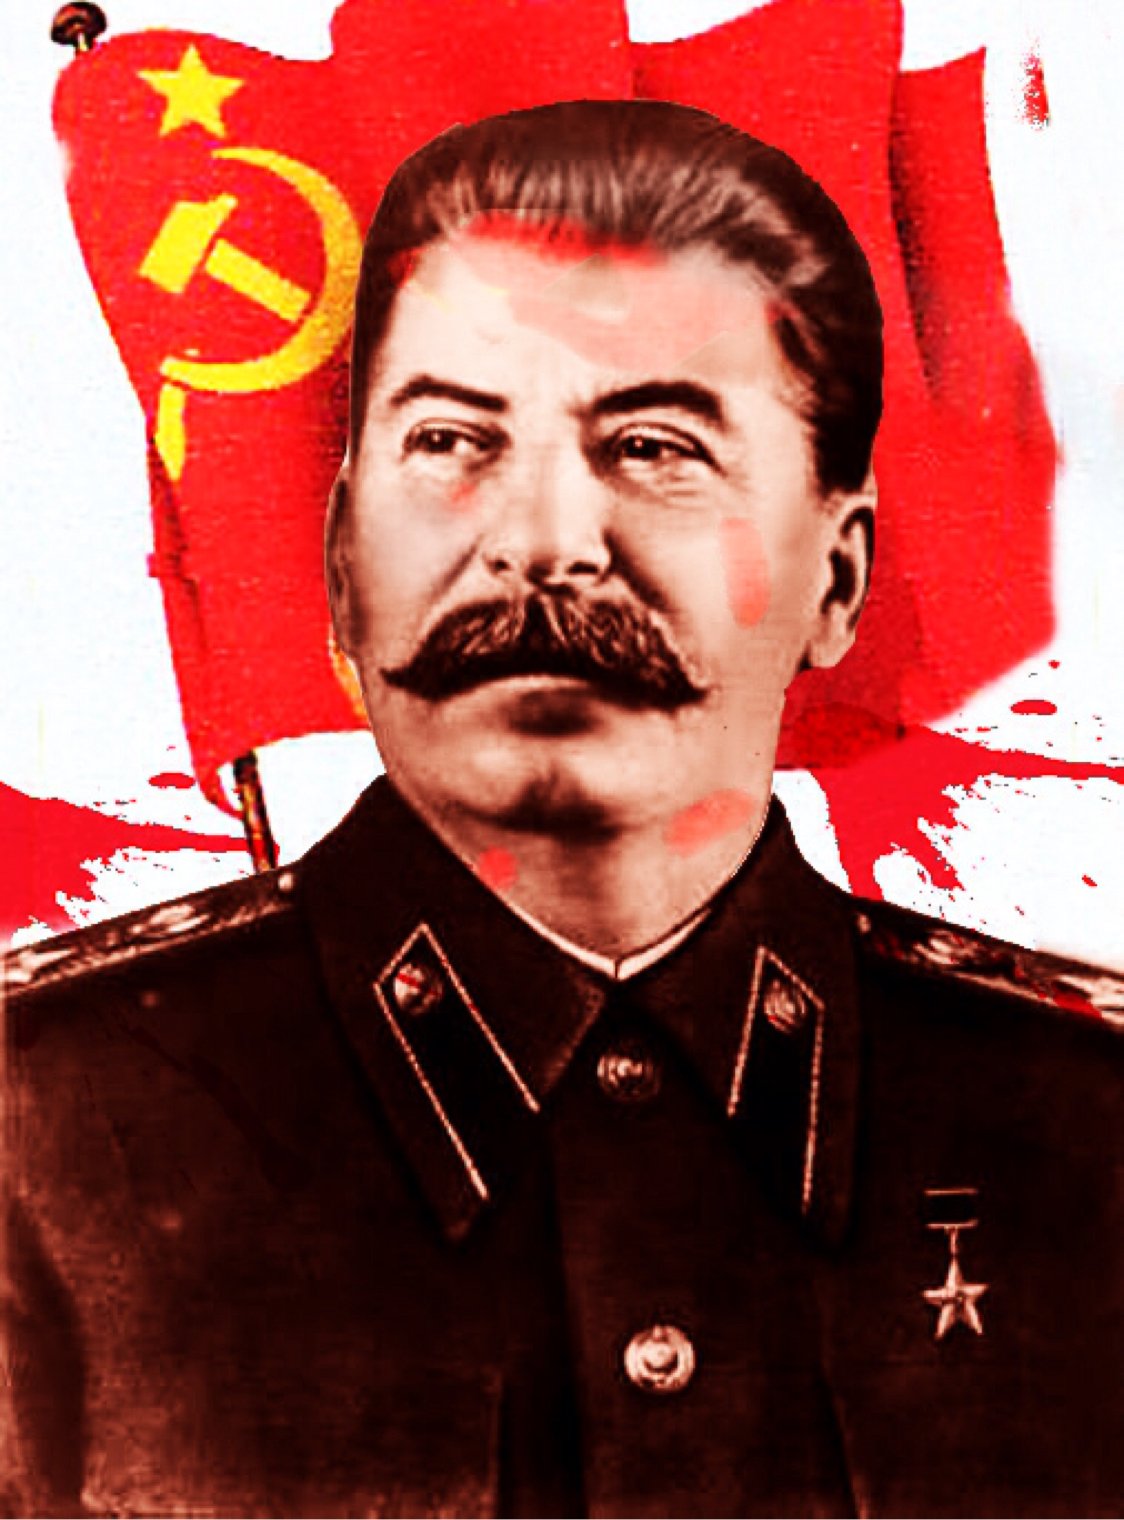 Stalin, y el desvanecimiento de la democracia en la izquierda mundial